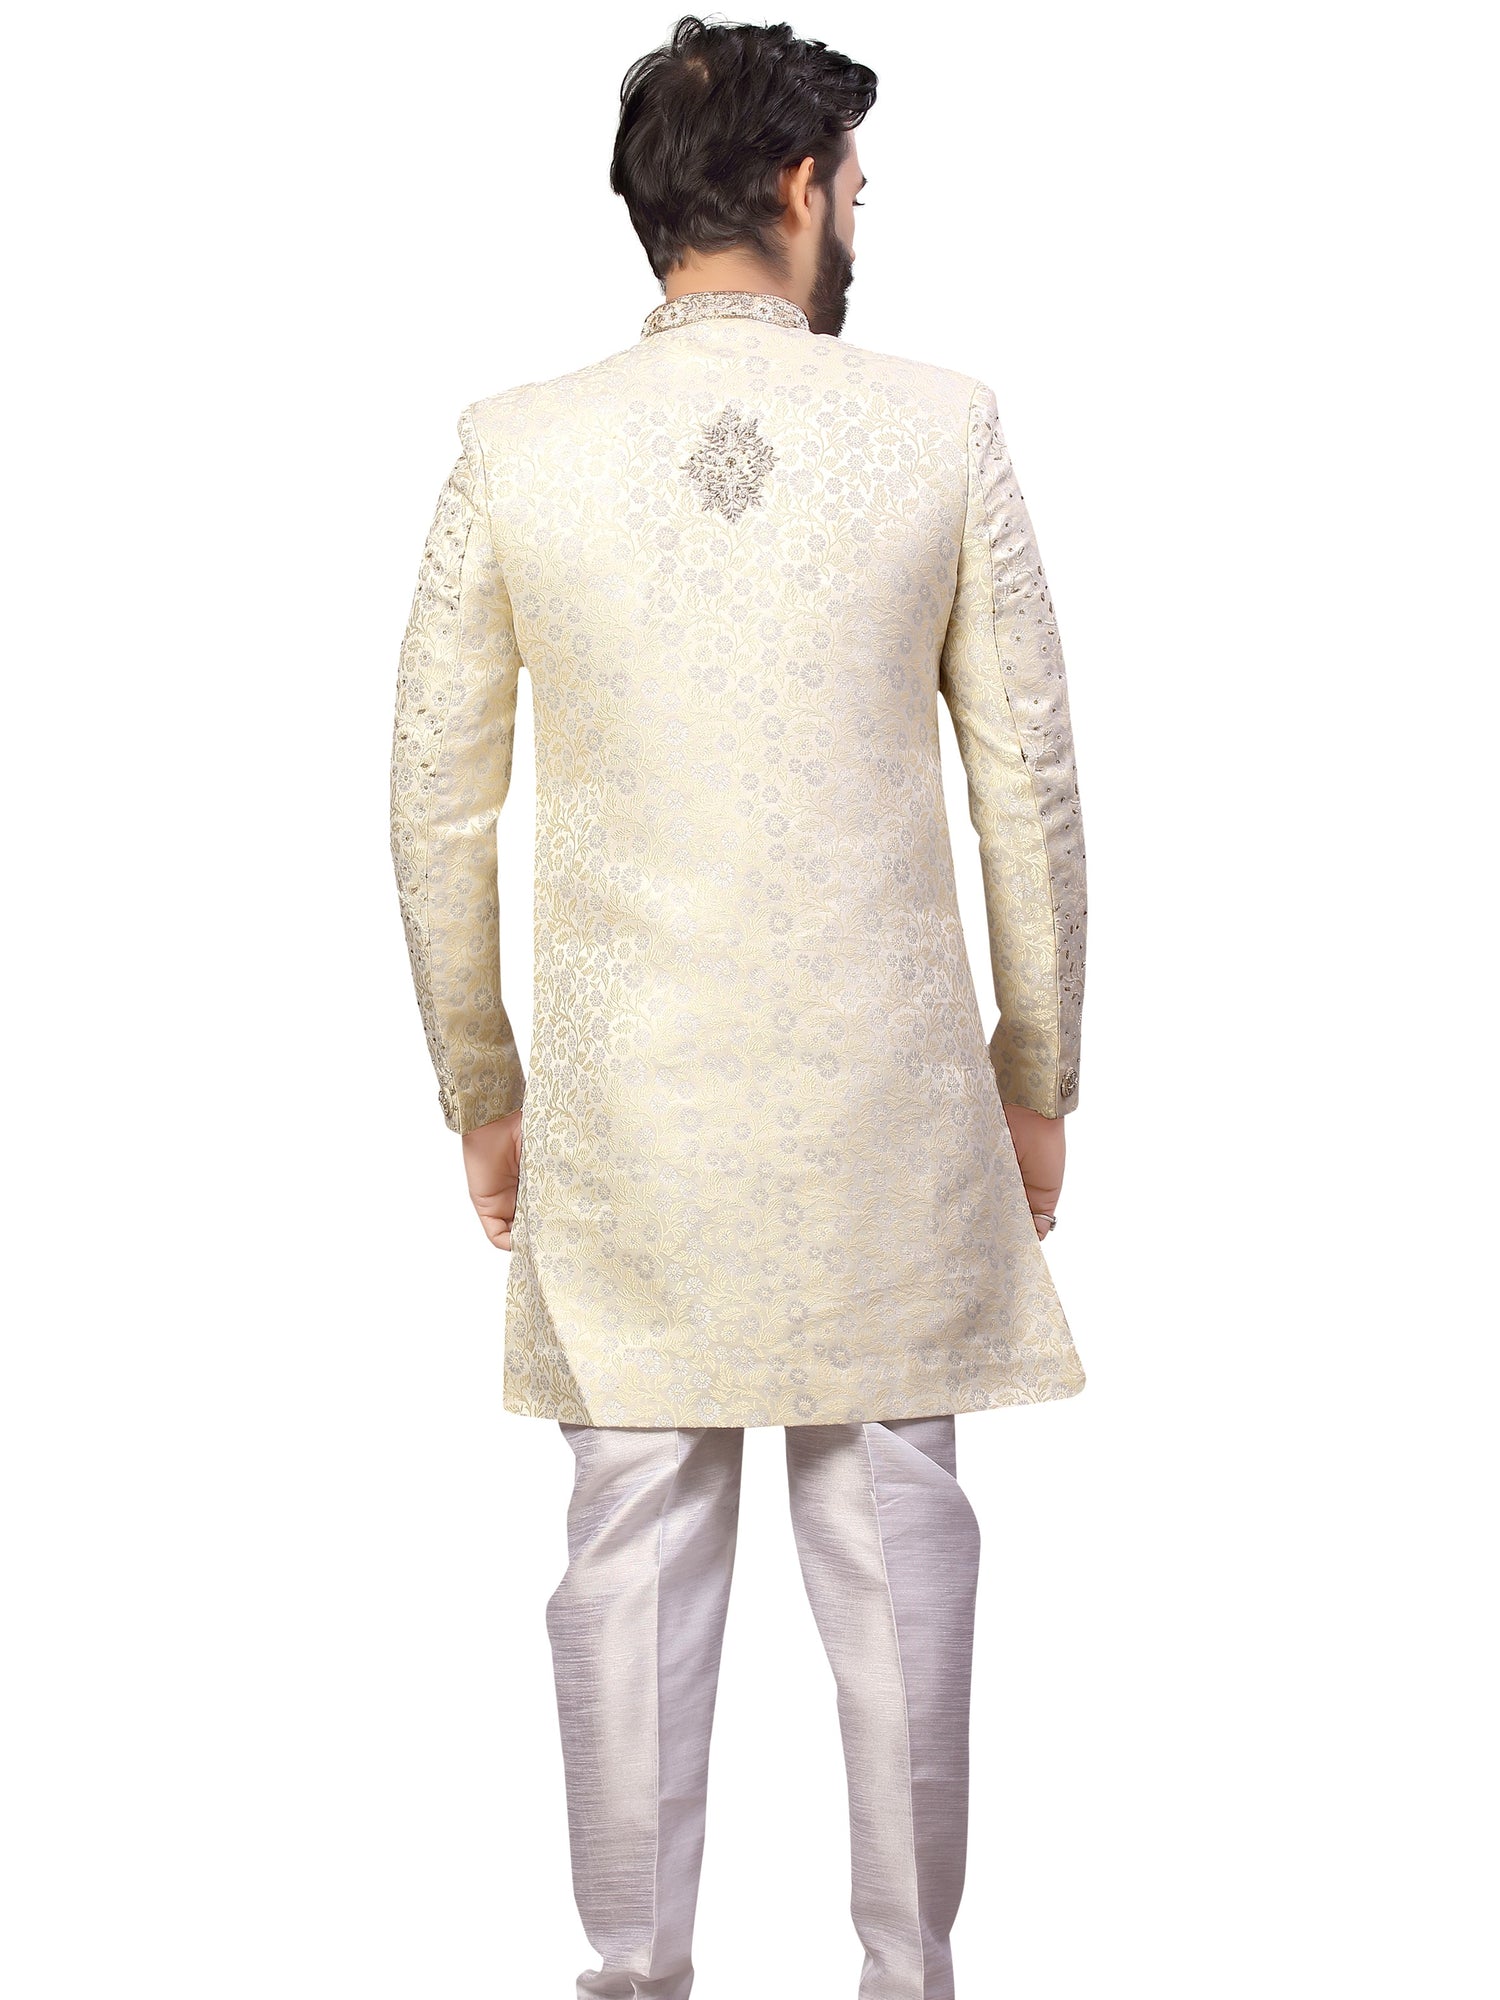 Mens Indo Western Suit - Roop Darshan